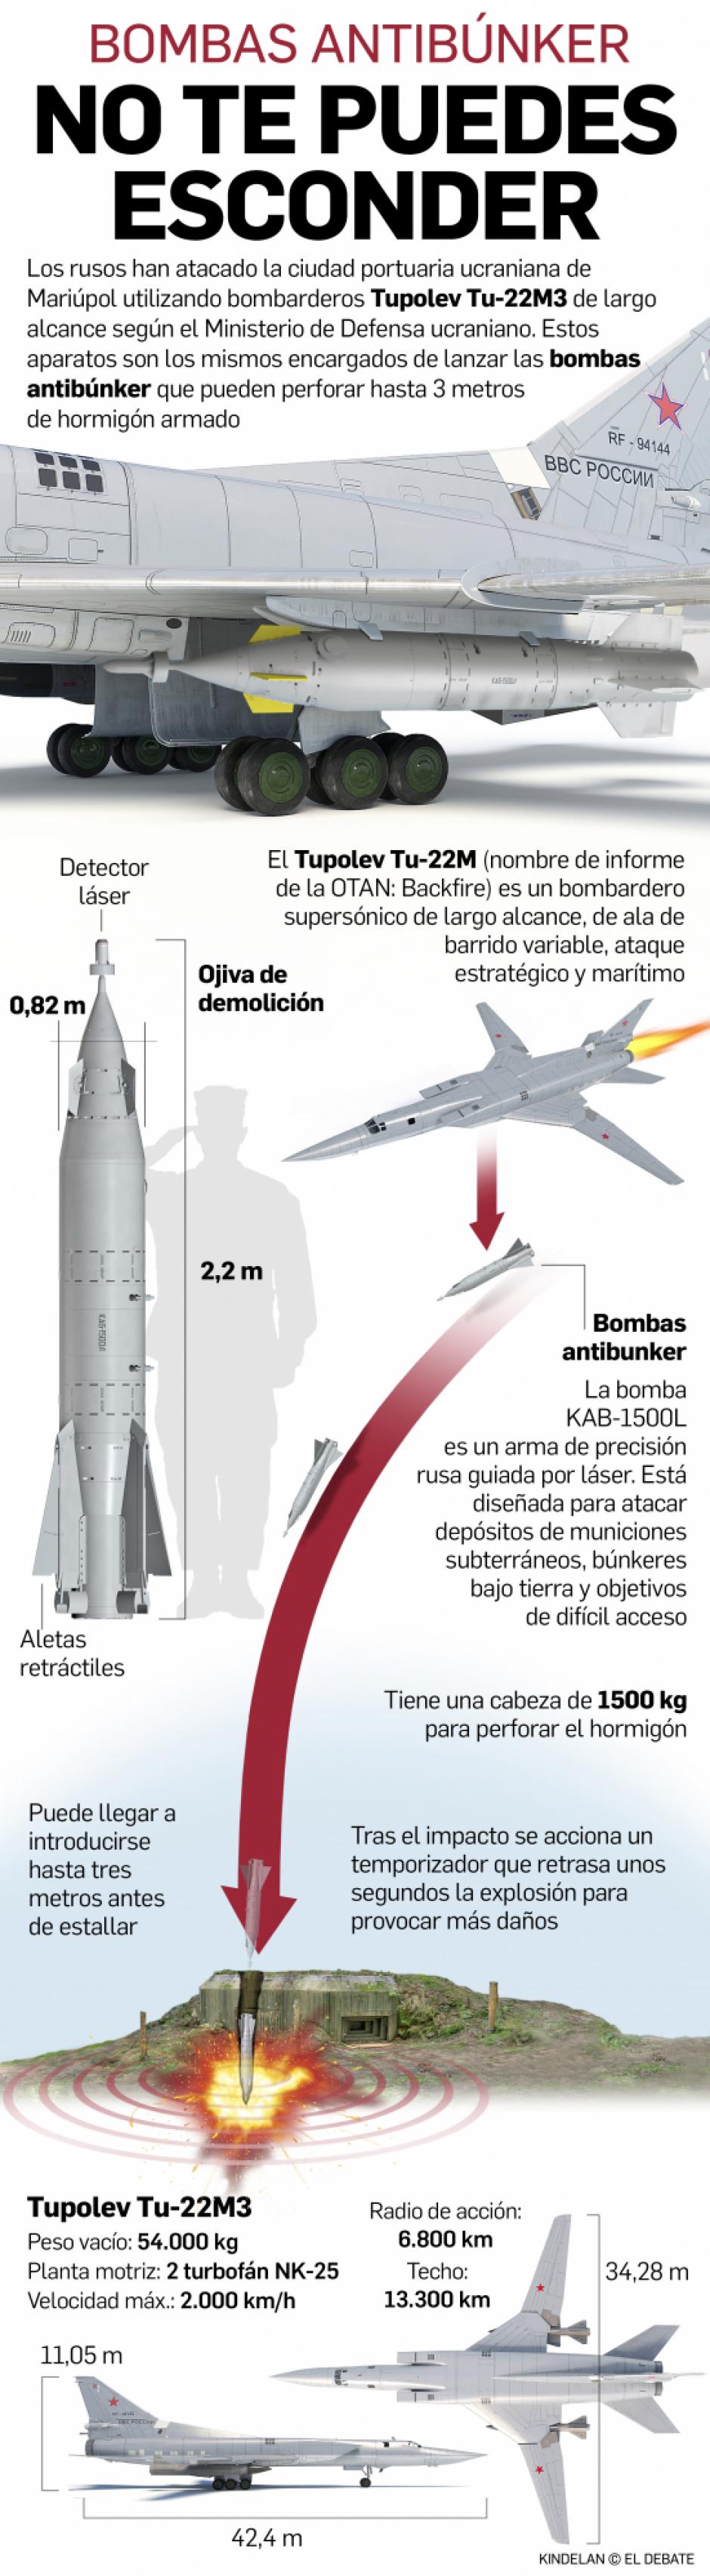 Infografía del funcionamiento de las bombas antibúnker lanzados desde los aviones Tu-22M